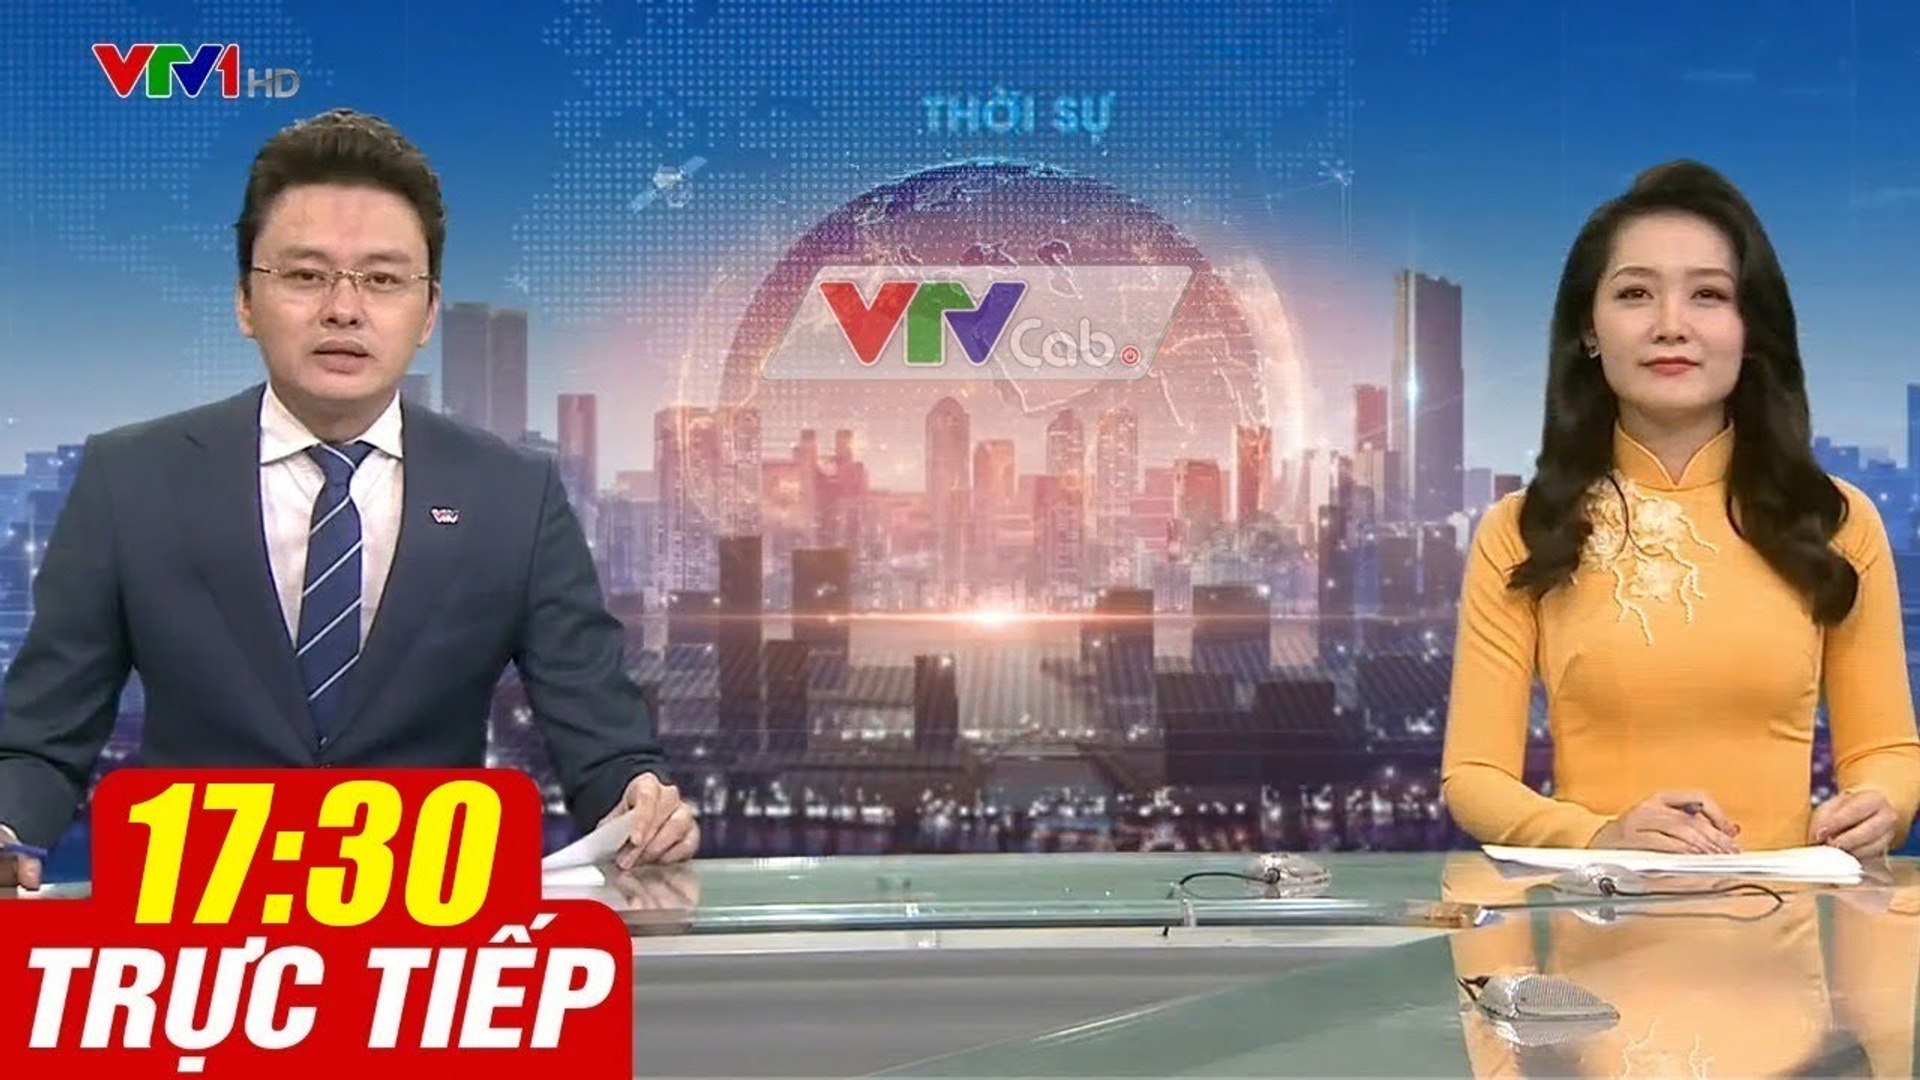 Trực Tiếp VIỆT NAM HÔM NAY 17h30 ngày 20.08.2020  Tin tức thời sự VTV1 mới nhất hôm nay